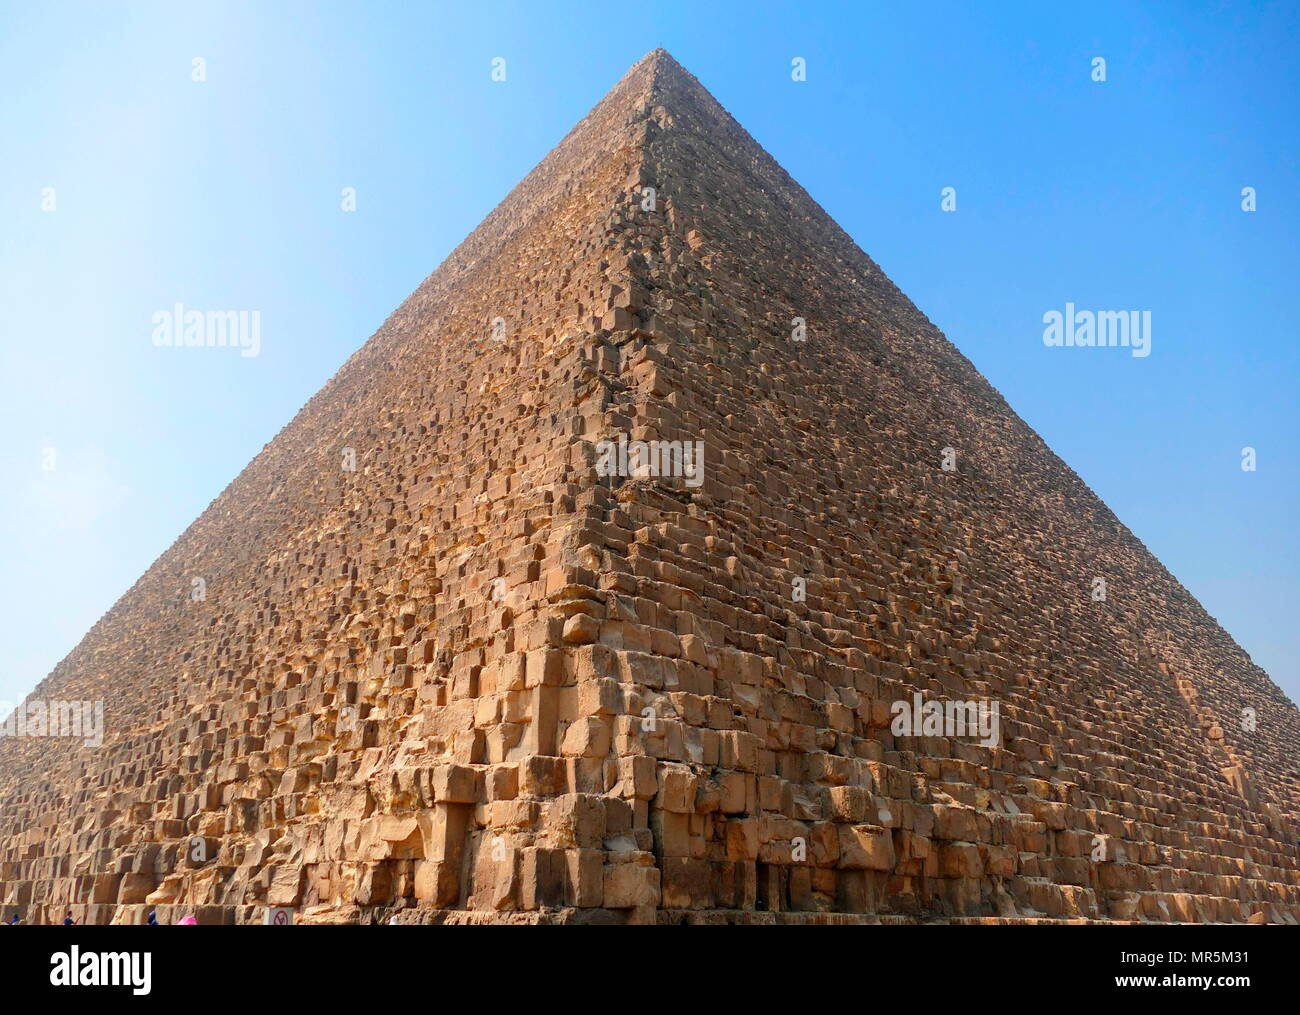 La Gran Pirámide de Giza (Pirámide de Khufu o pirámide de Keops); la más antigua y más grande de las tres pirámides en el complejo de la pirámide de Giza, en Egipto. Es la más antigua de las siete maravillas del mundo antiguo, y la única que permanecen prácticamente intactos. Completado alrededor de 2560 AC. Foto de stock